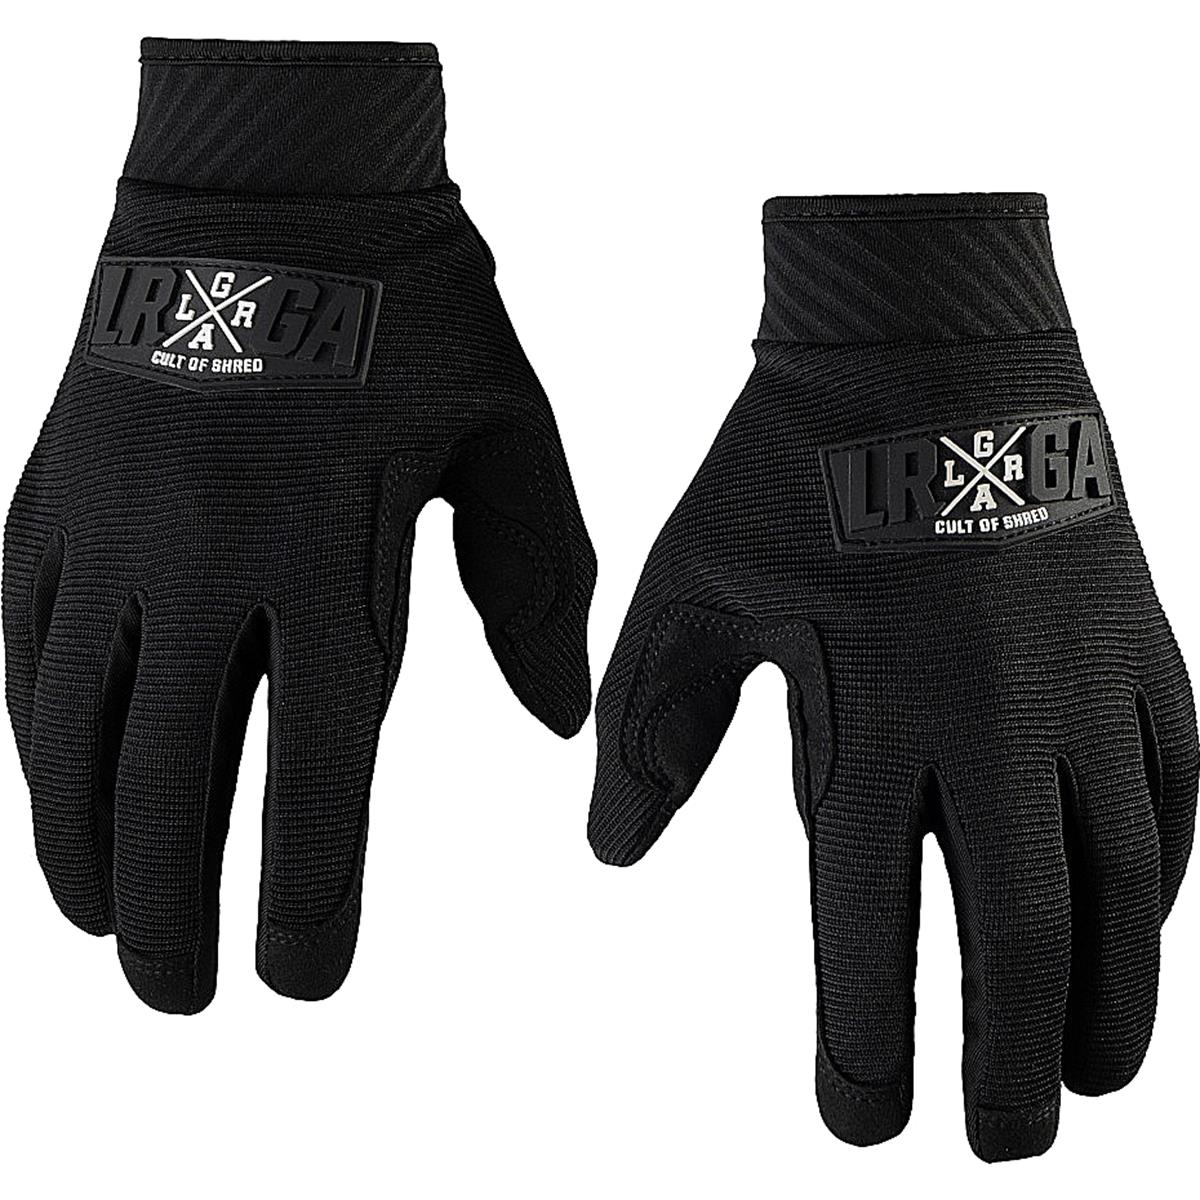 Loose Riders MTB Gloves Freeride Black